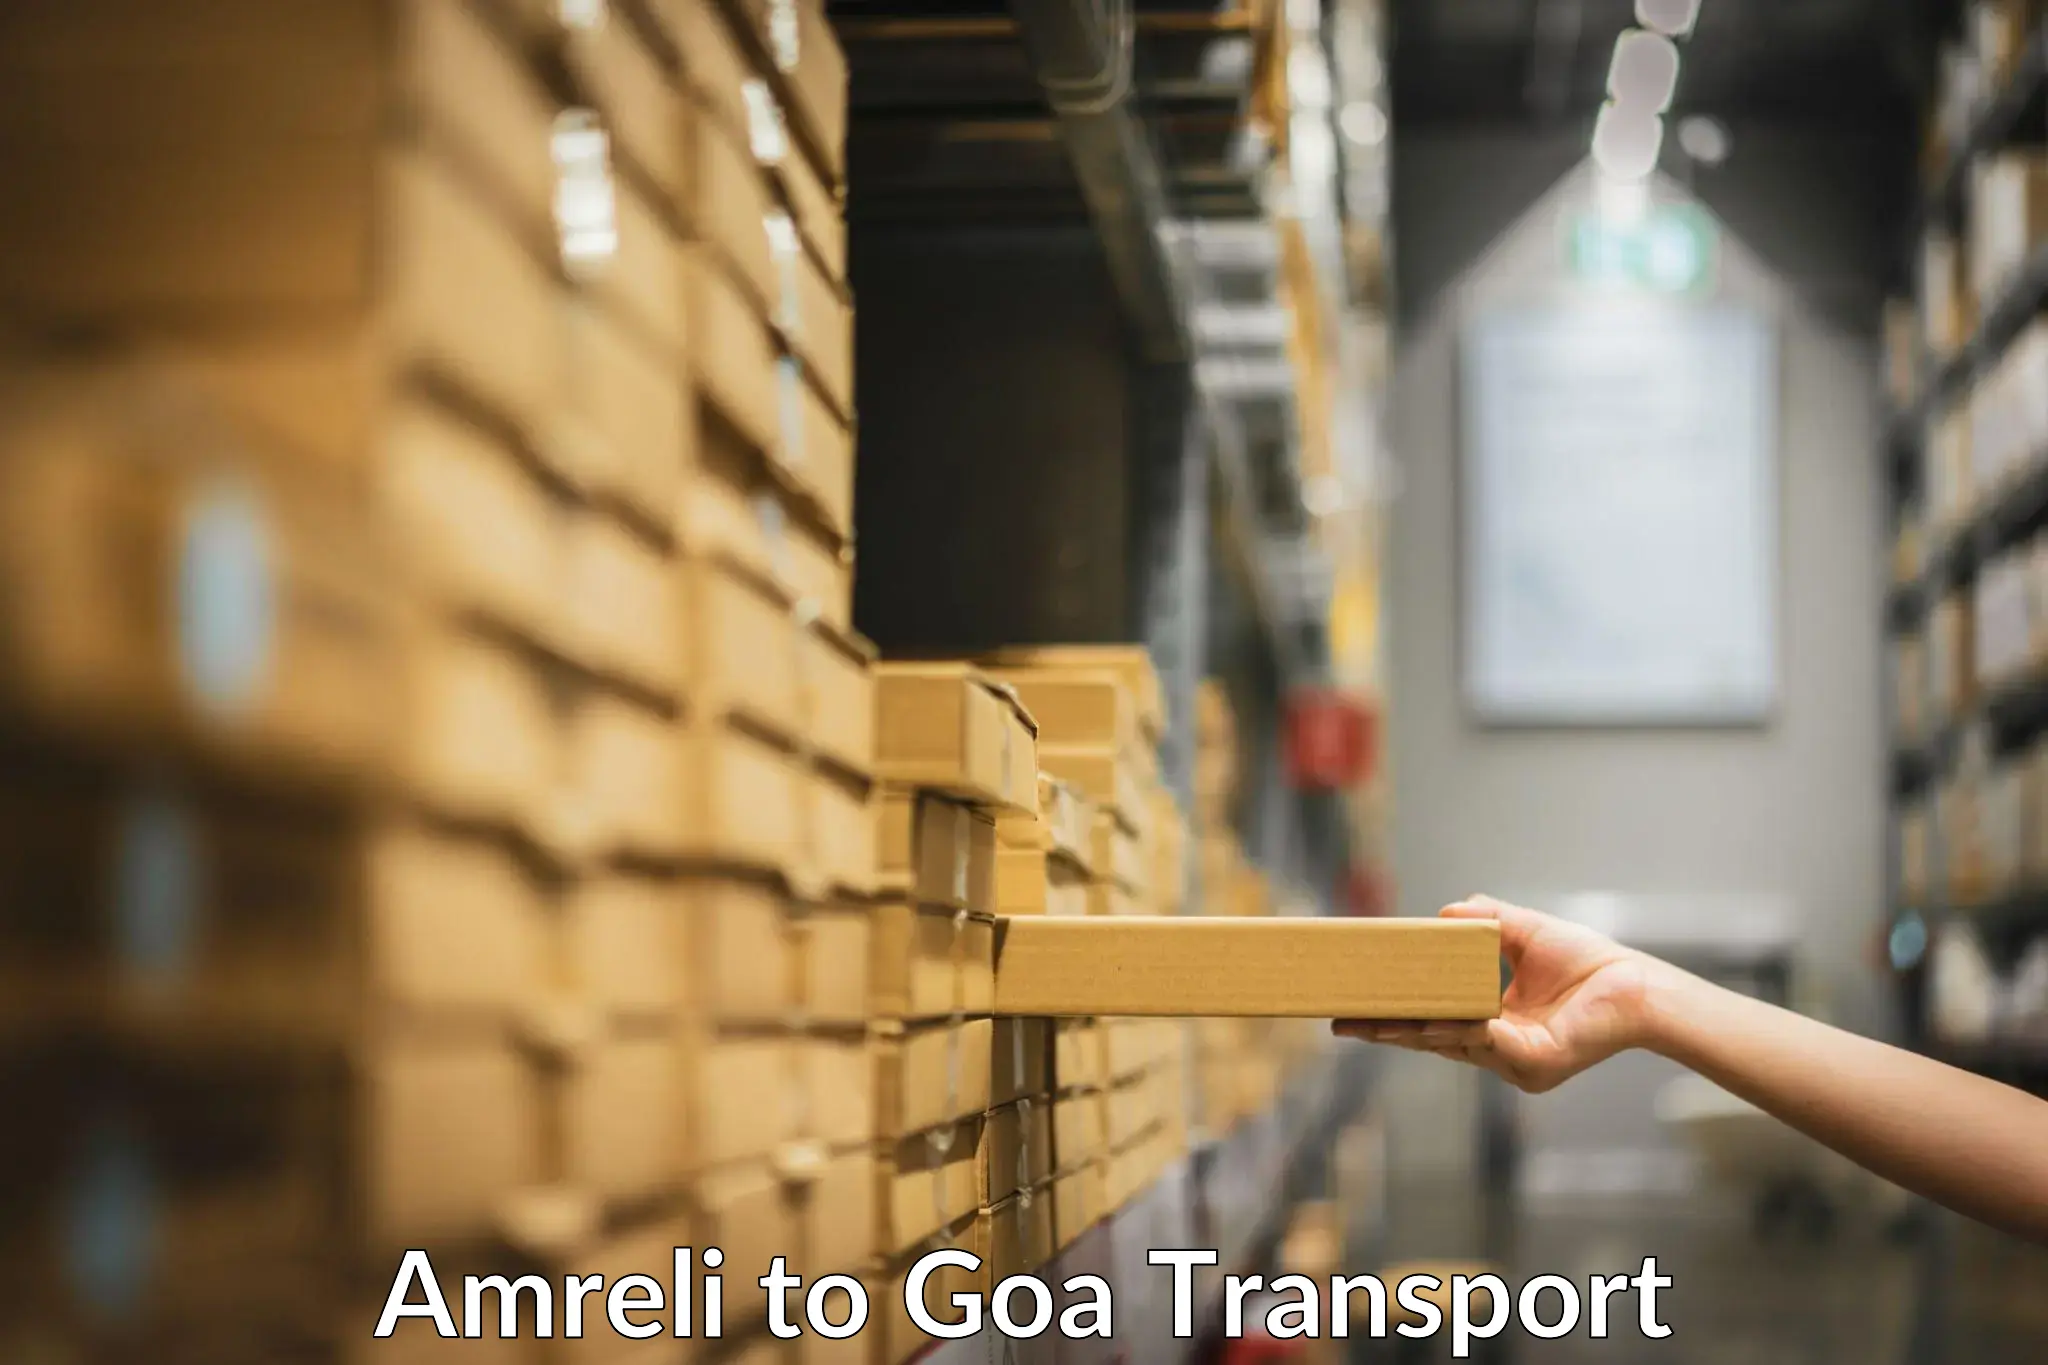 Nearby transport service Amreli to Panaji